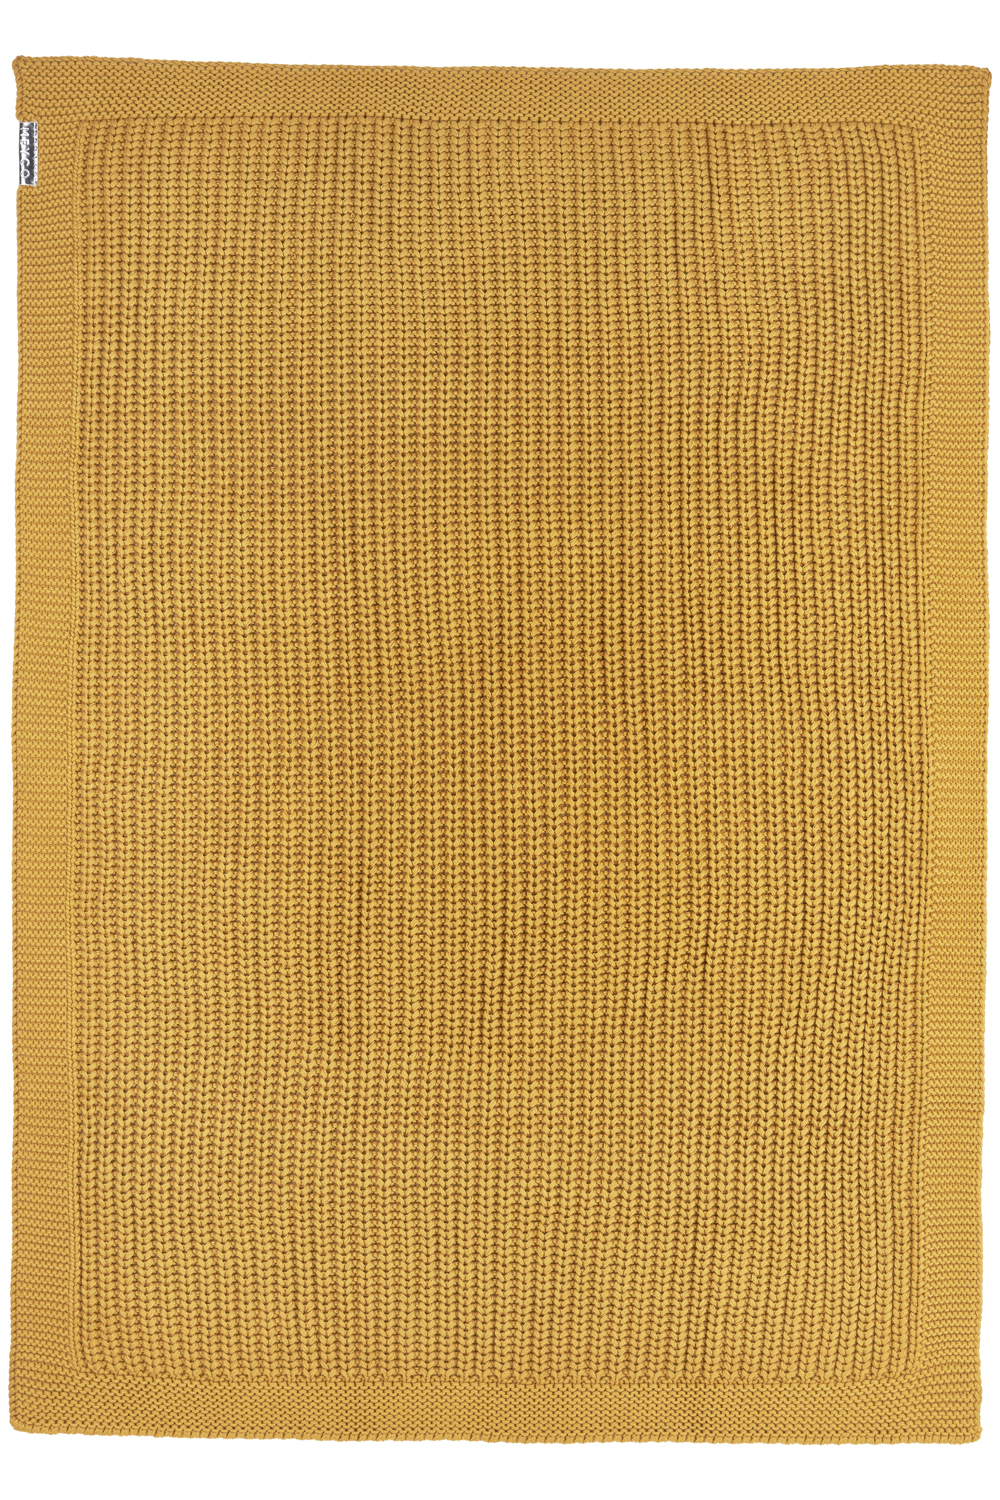 Ledikantdeken Herringbone - Honey Gold - 100x150cm